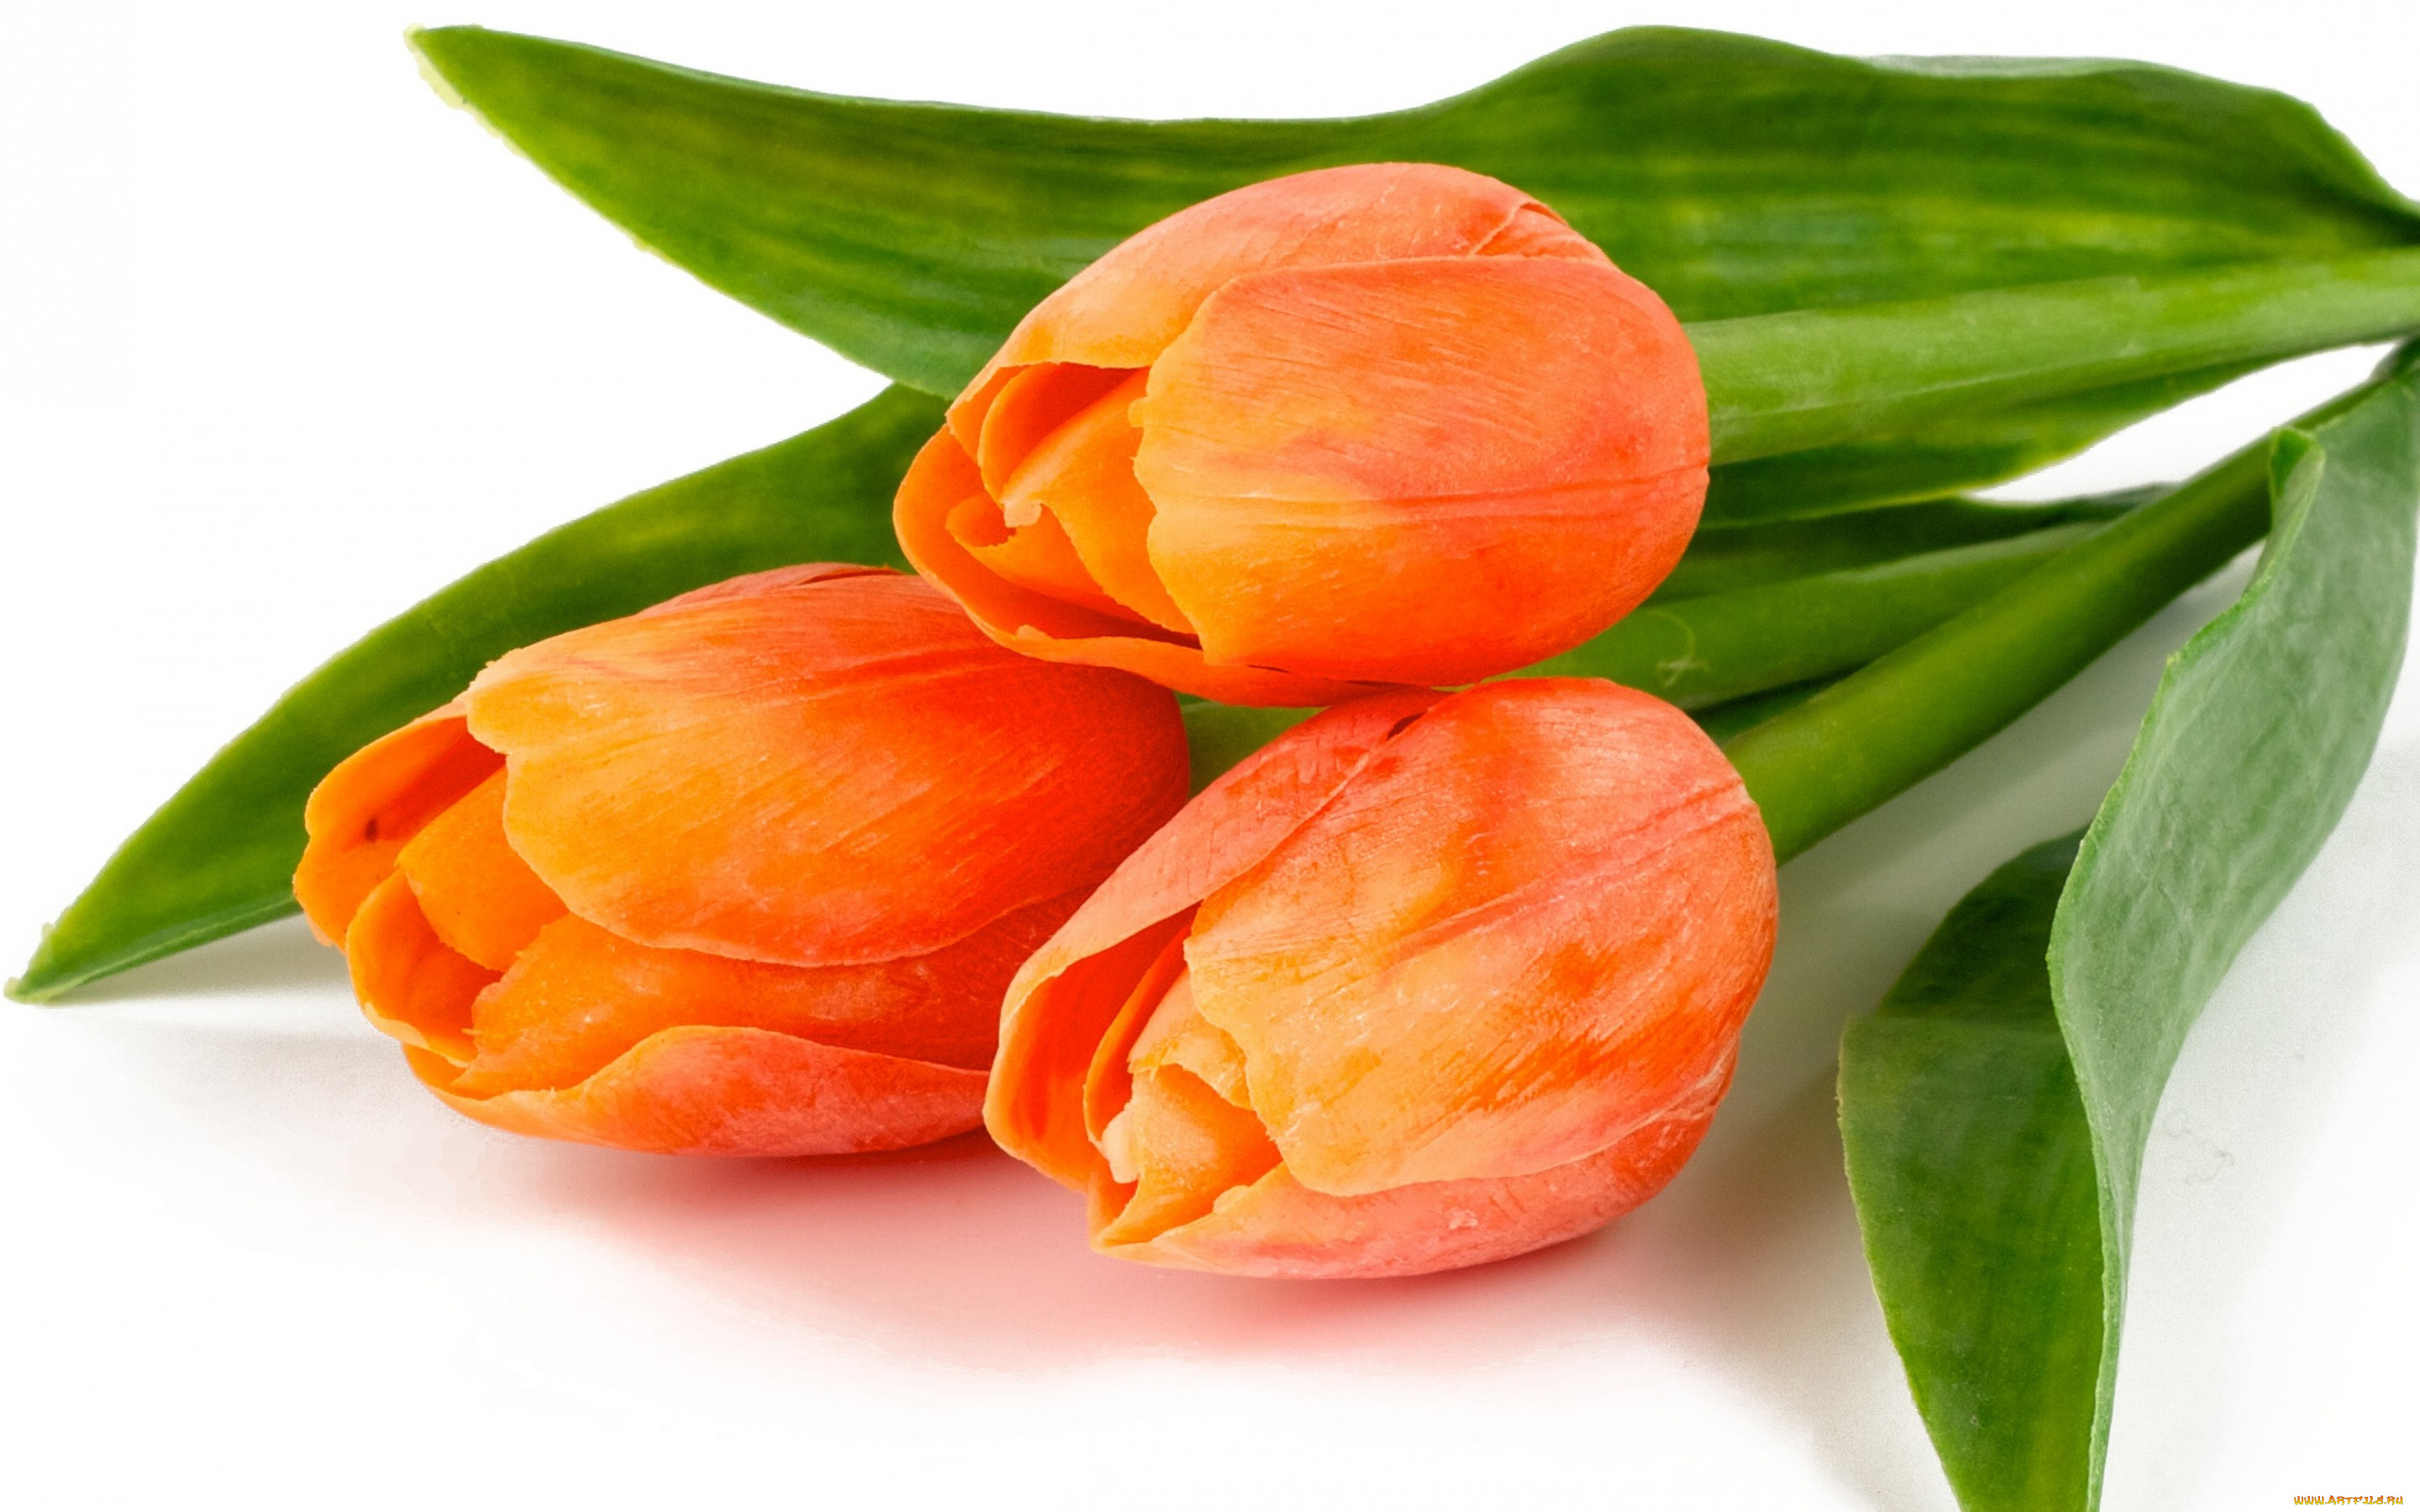 цветы, тюльпаны, красота, листья, orange, fire, bouquet, bright, flowers, tulips, лепестки, букет, оранжевые, огненные, яркие, beauty, petals